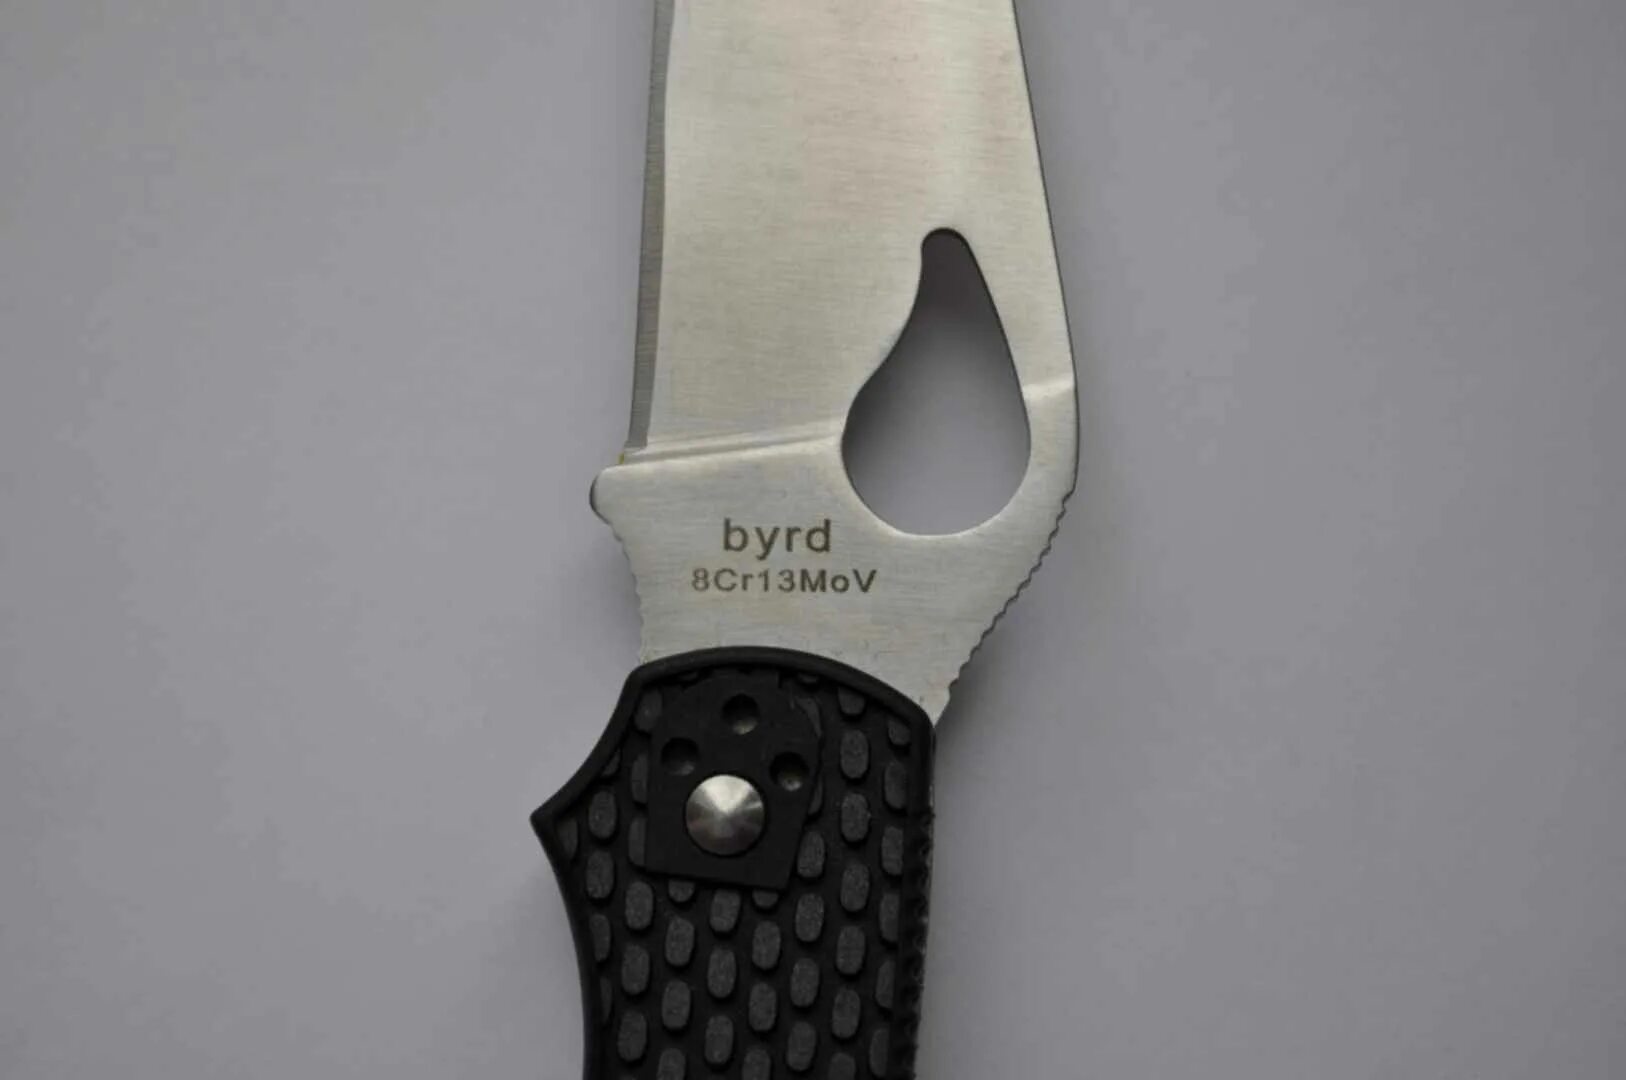 Bir d. Byrd 8cr13mov. Byrd cara cara 2 Emerson vs Spyderco Endura 4. Нож Byrd 8cr13mov ченный метал. Накладки Spyderco Endura из рога.